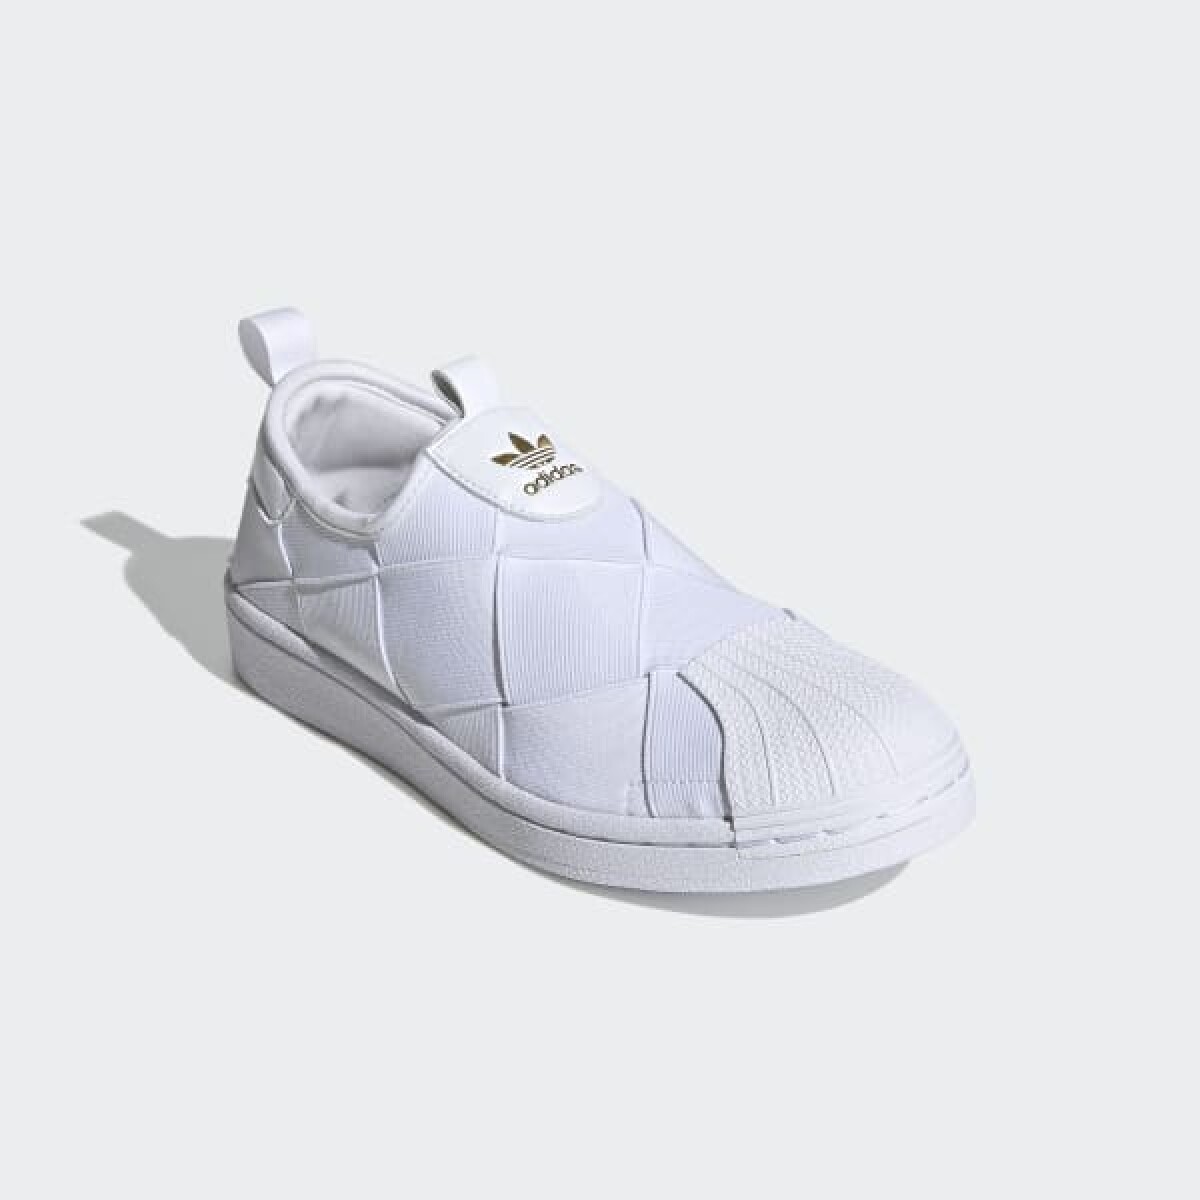 Championes Adidas Superstar Slip On Blancos - Color Único 